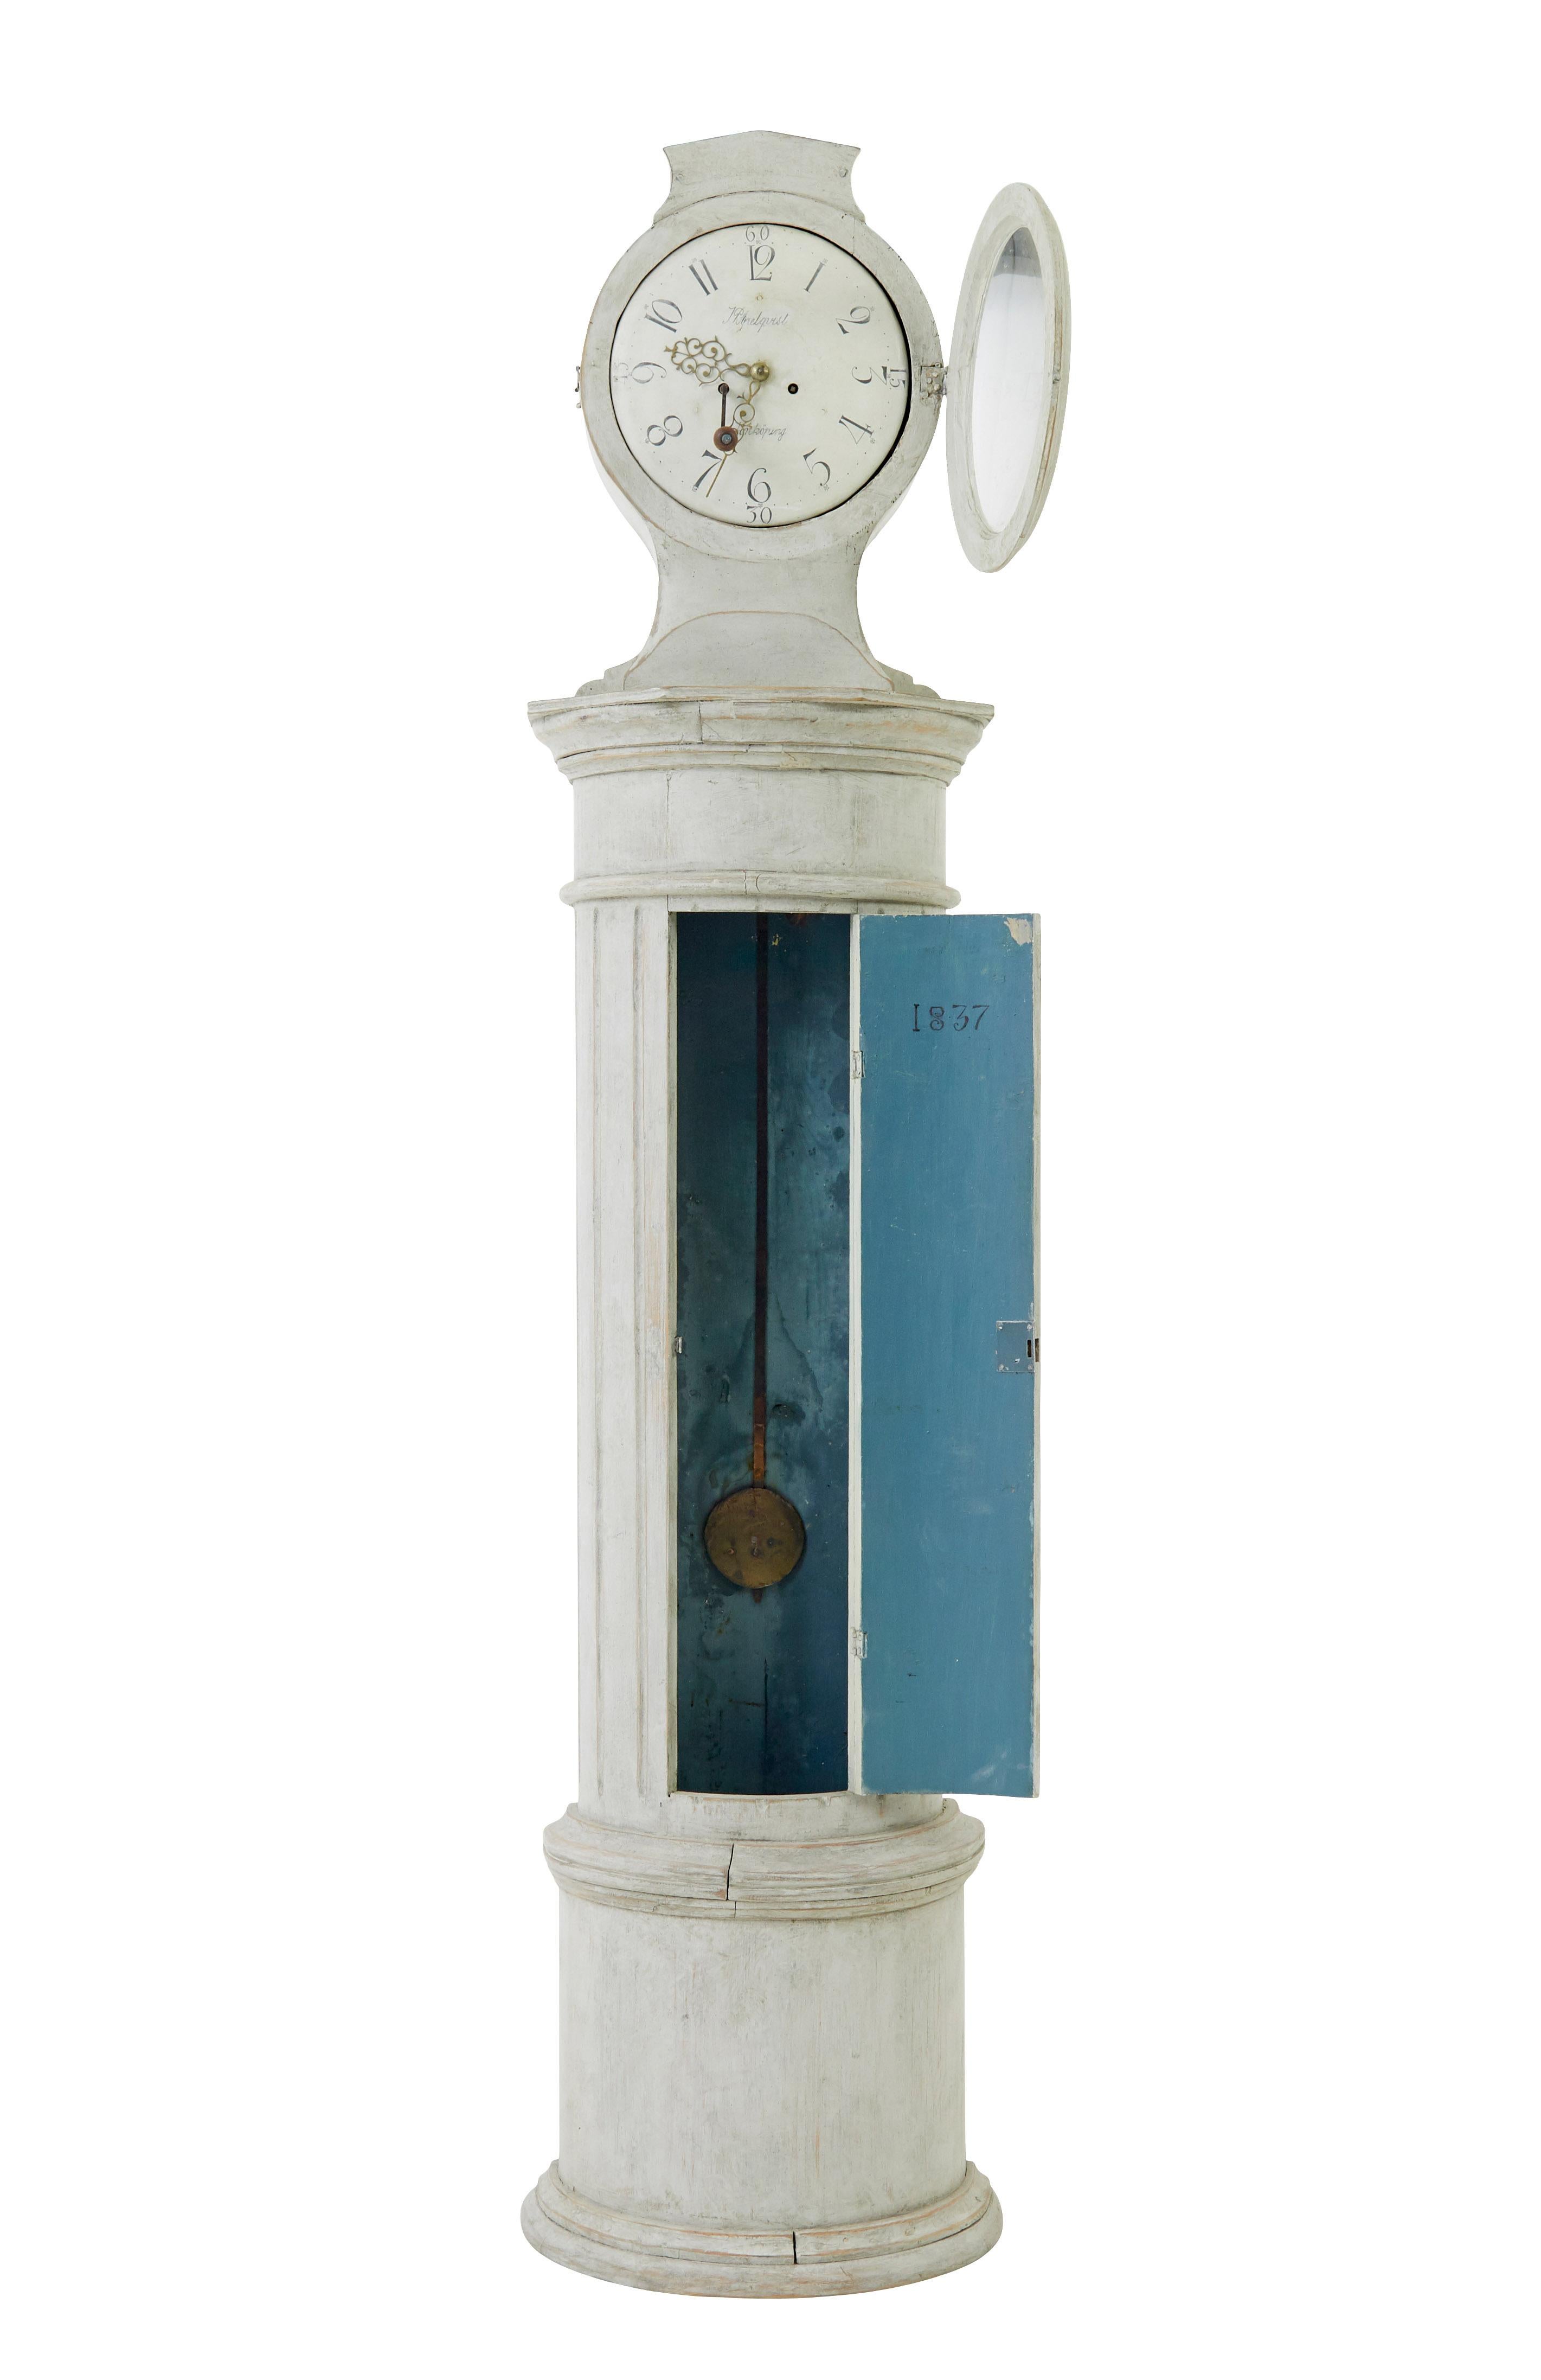 Horloge suédoise du milieu du 19e siècle à colonne décorative et à boîtier long, vers 1850.

Belle horloge à long boîtier de Suède. Formé d'une colonne cannelée décorative qui forme une demi-lune. Cadran d'horloge avec chiffres arabes et signé par